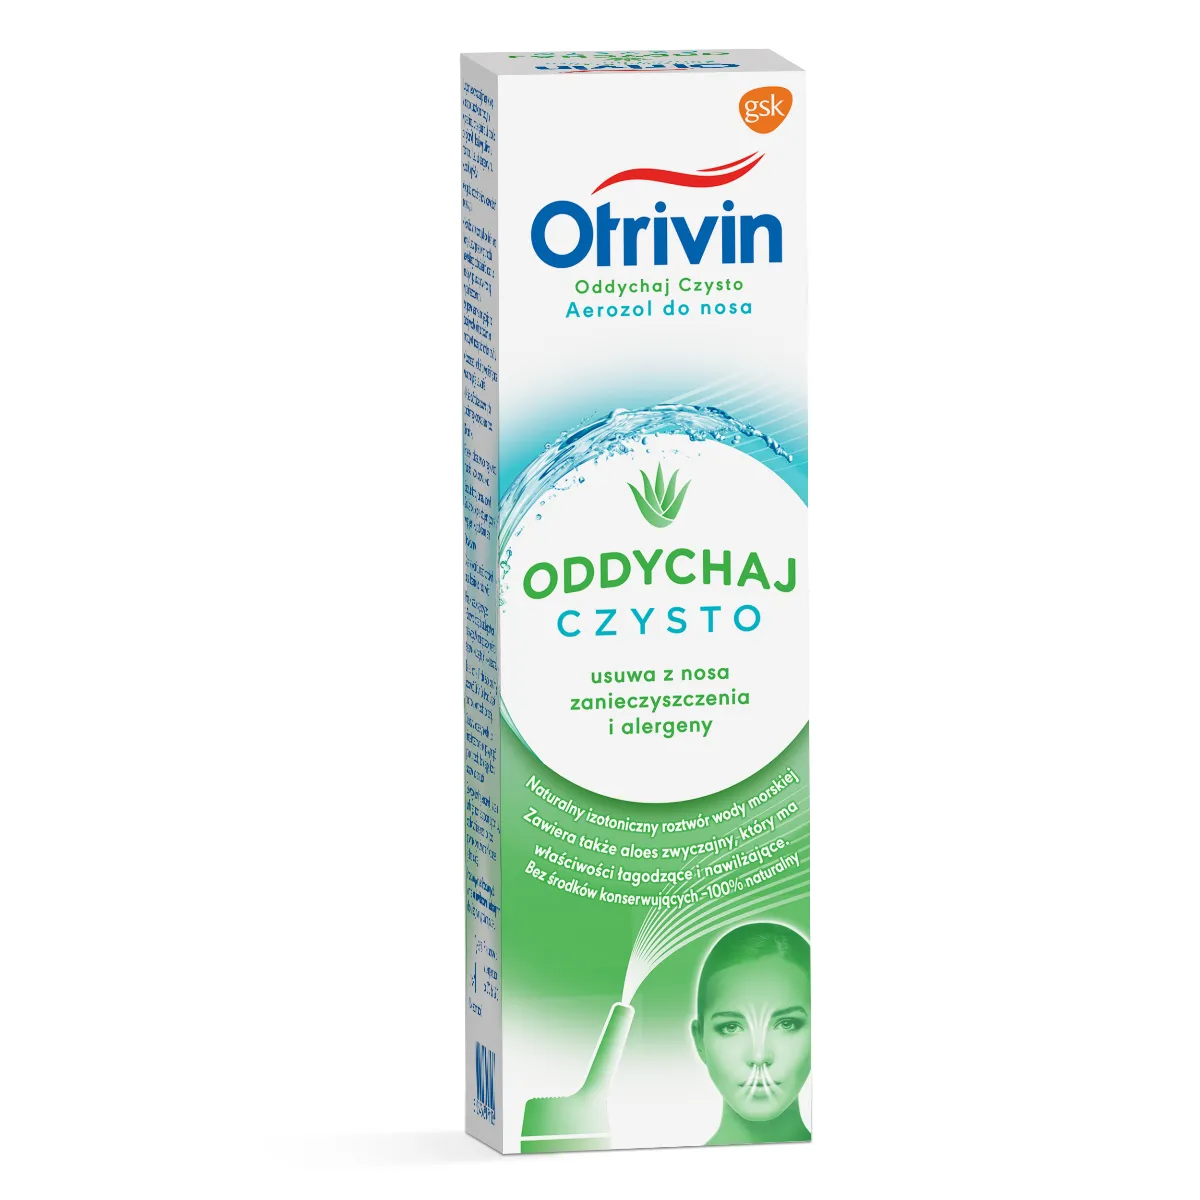 Otrivin Oddychaj Czysto dla dorosłych Aerozol 100% naturalny z ekstraktem z aloesu, 100 ml 